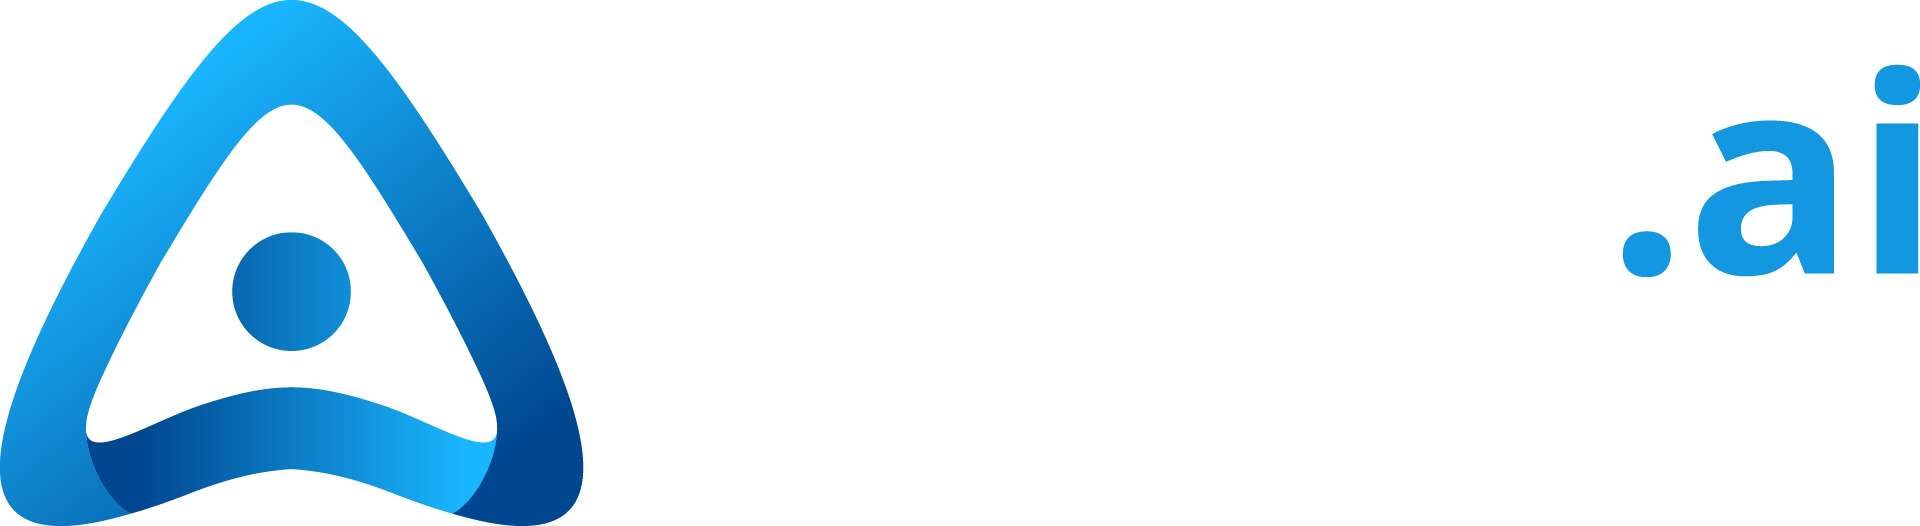 Amplify.ai